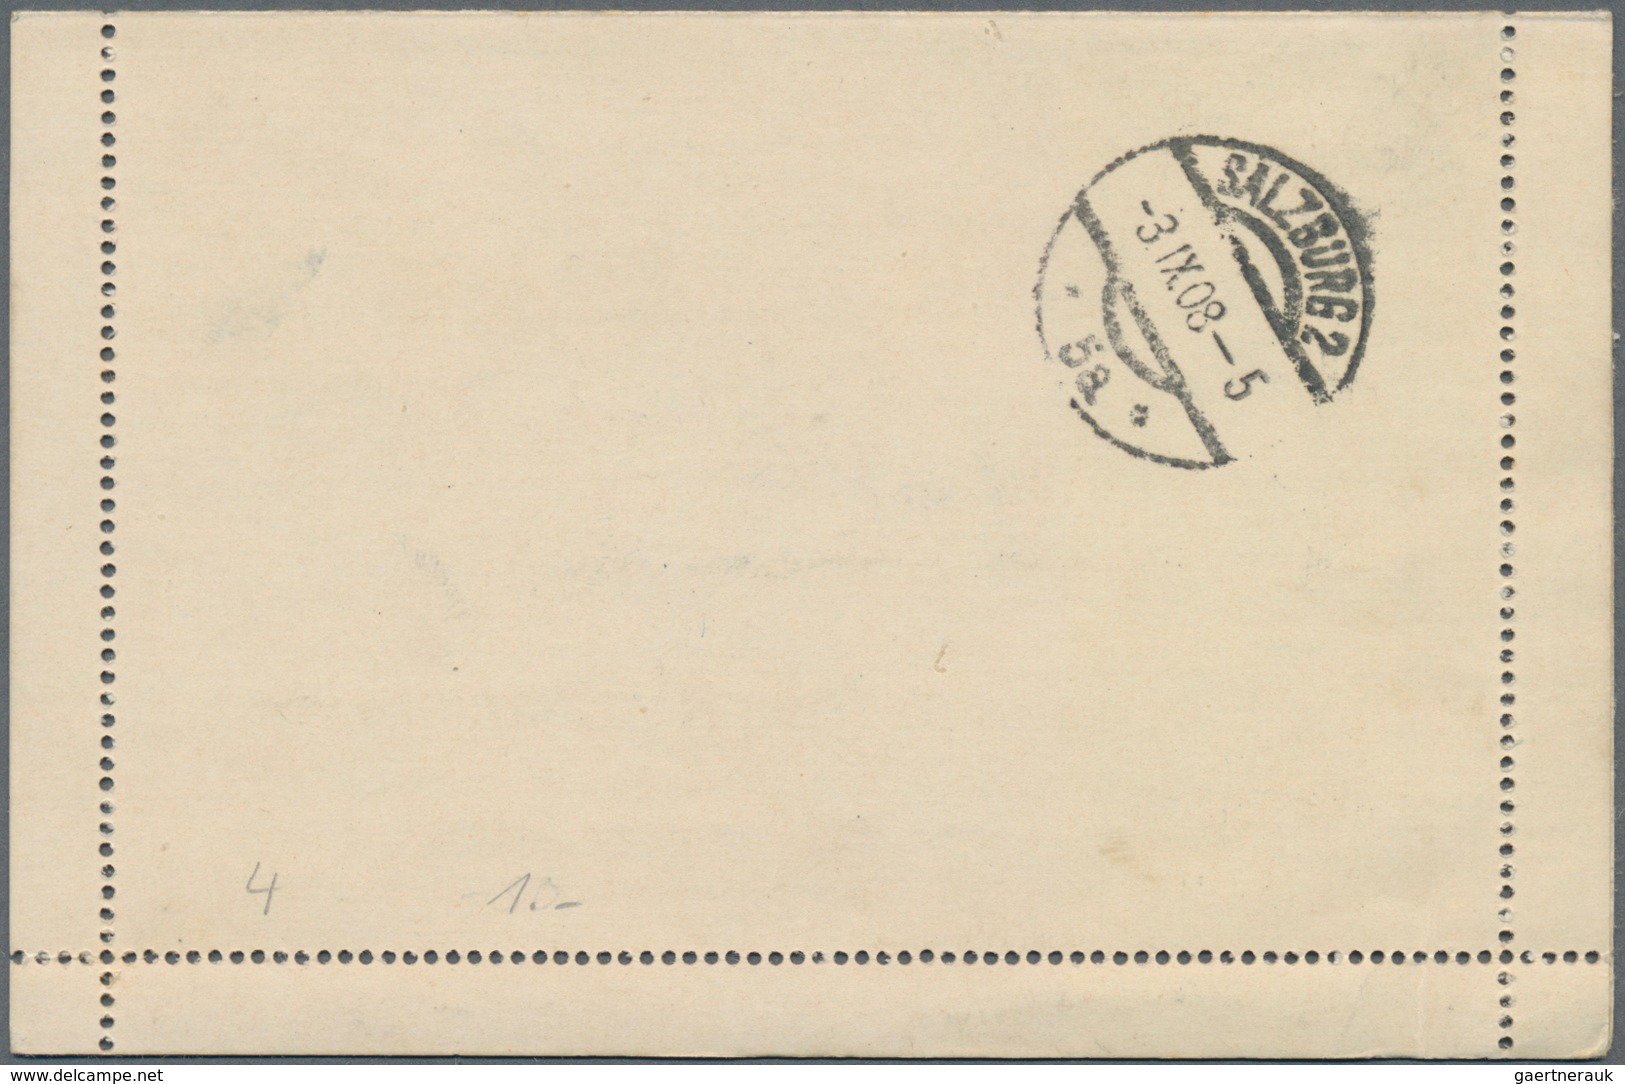 Island - Ganzsachen: 1908, 10 Aur Card Letter With Margins Sent Uprated From REYKJAVIK To Salzburg. - Postwaardestukken